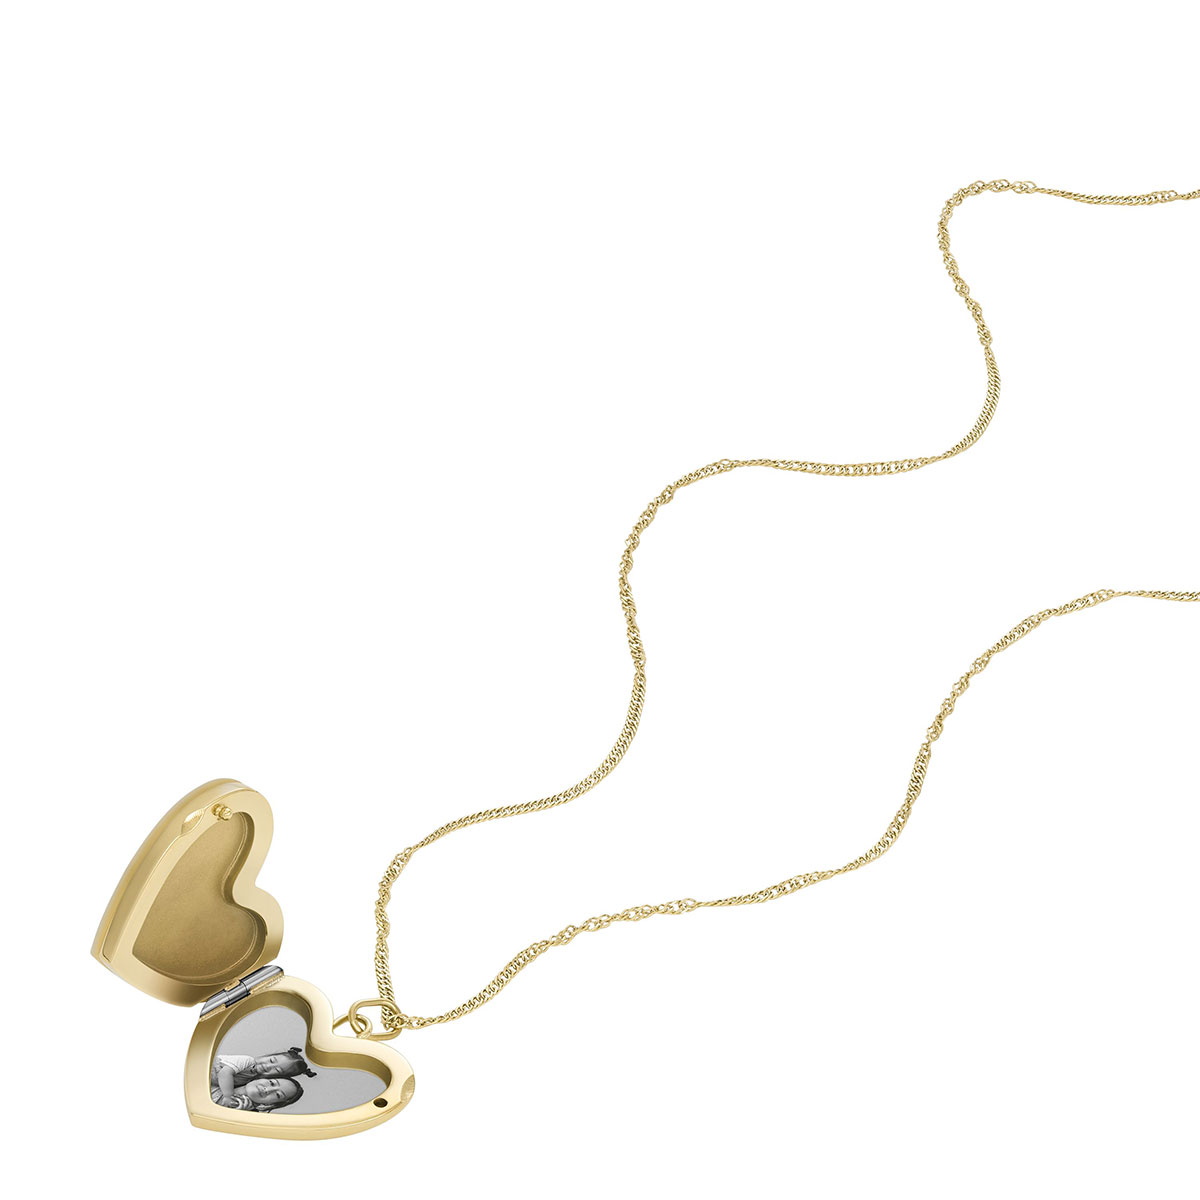 Fossil Jewelry necklace JF04430710 - watchesonline.com